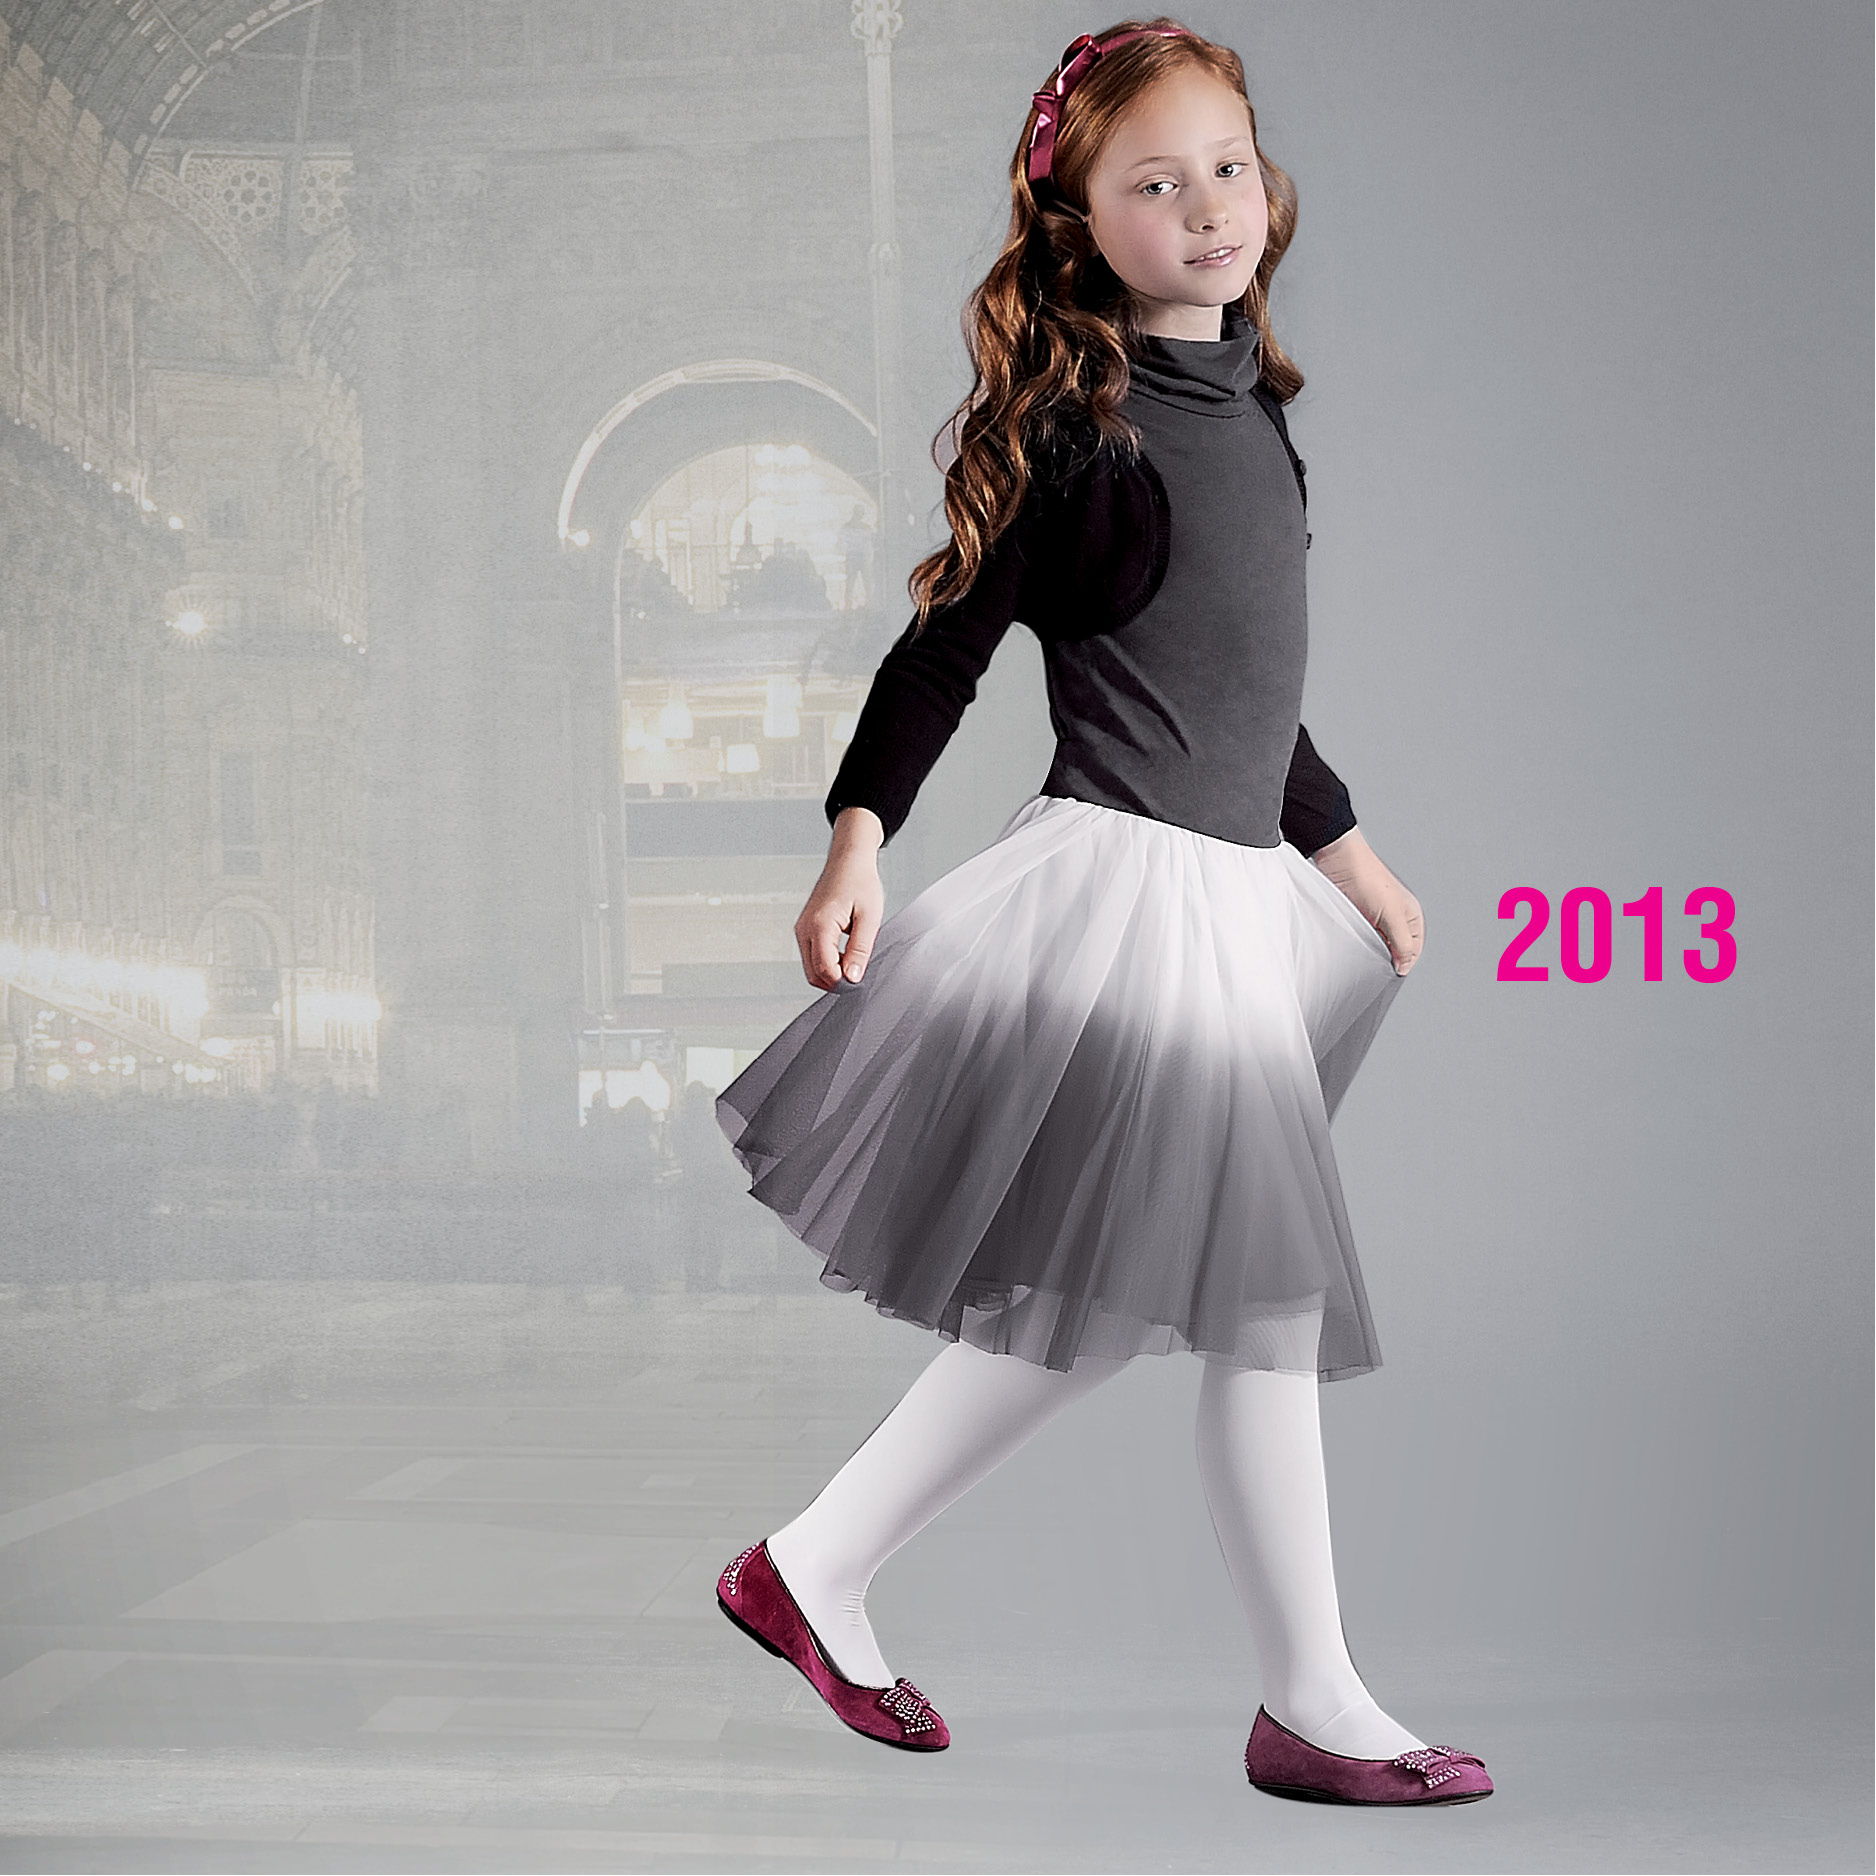 Missouri Children Shoes History 2013